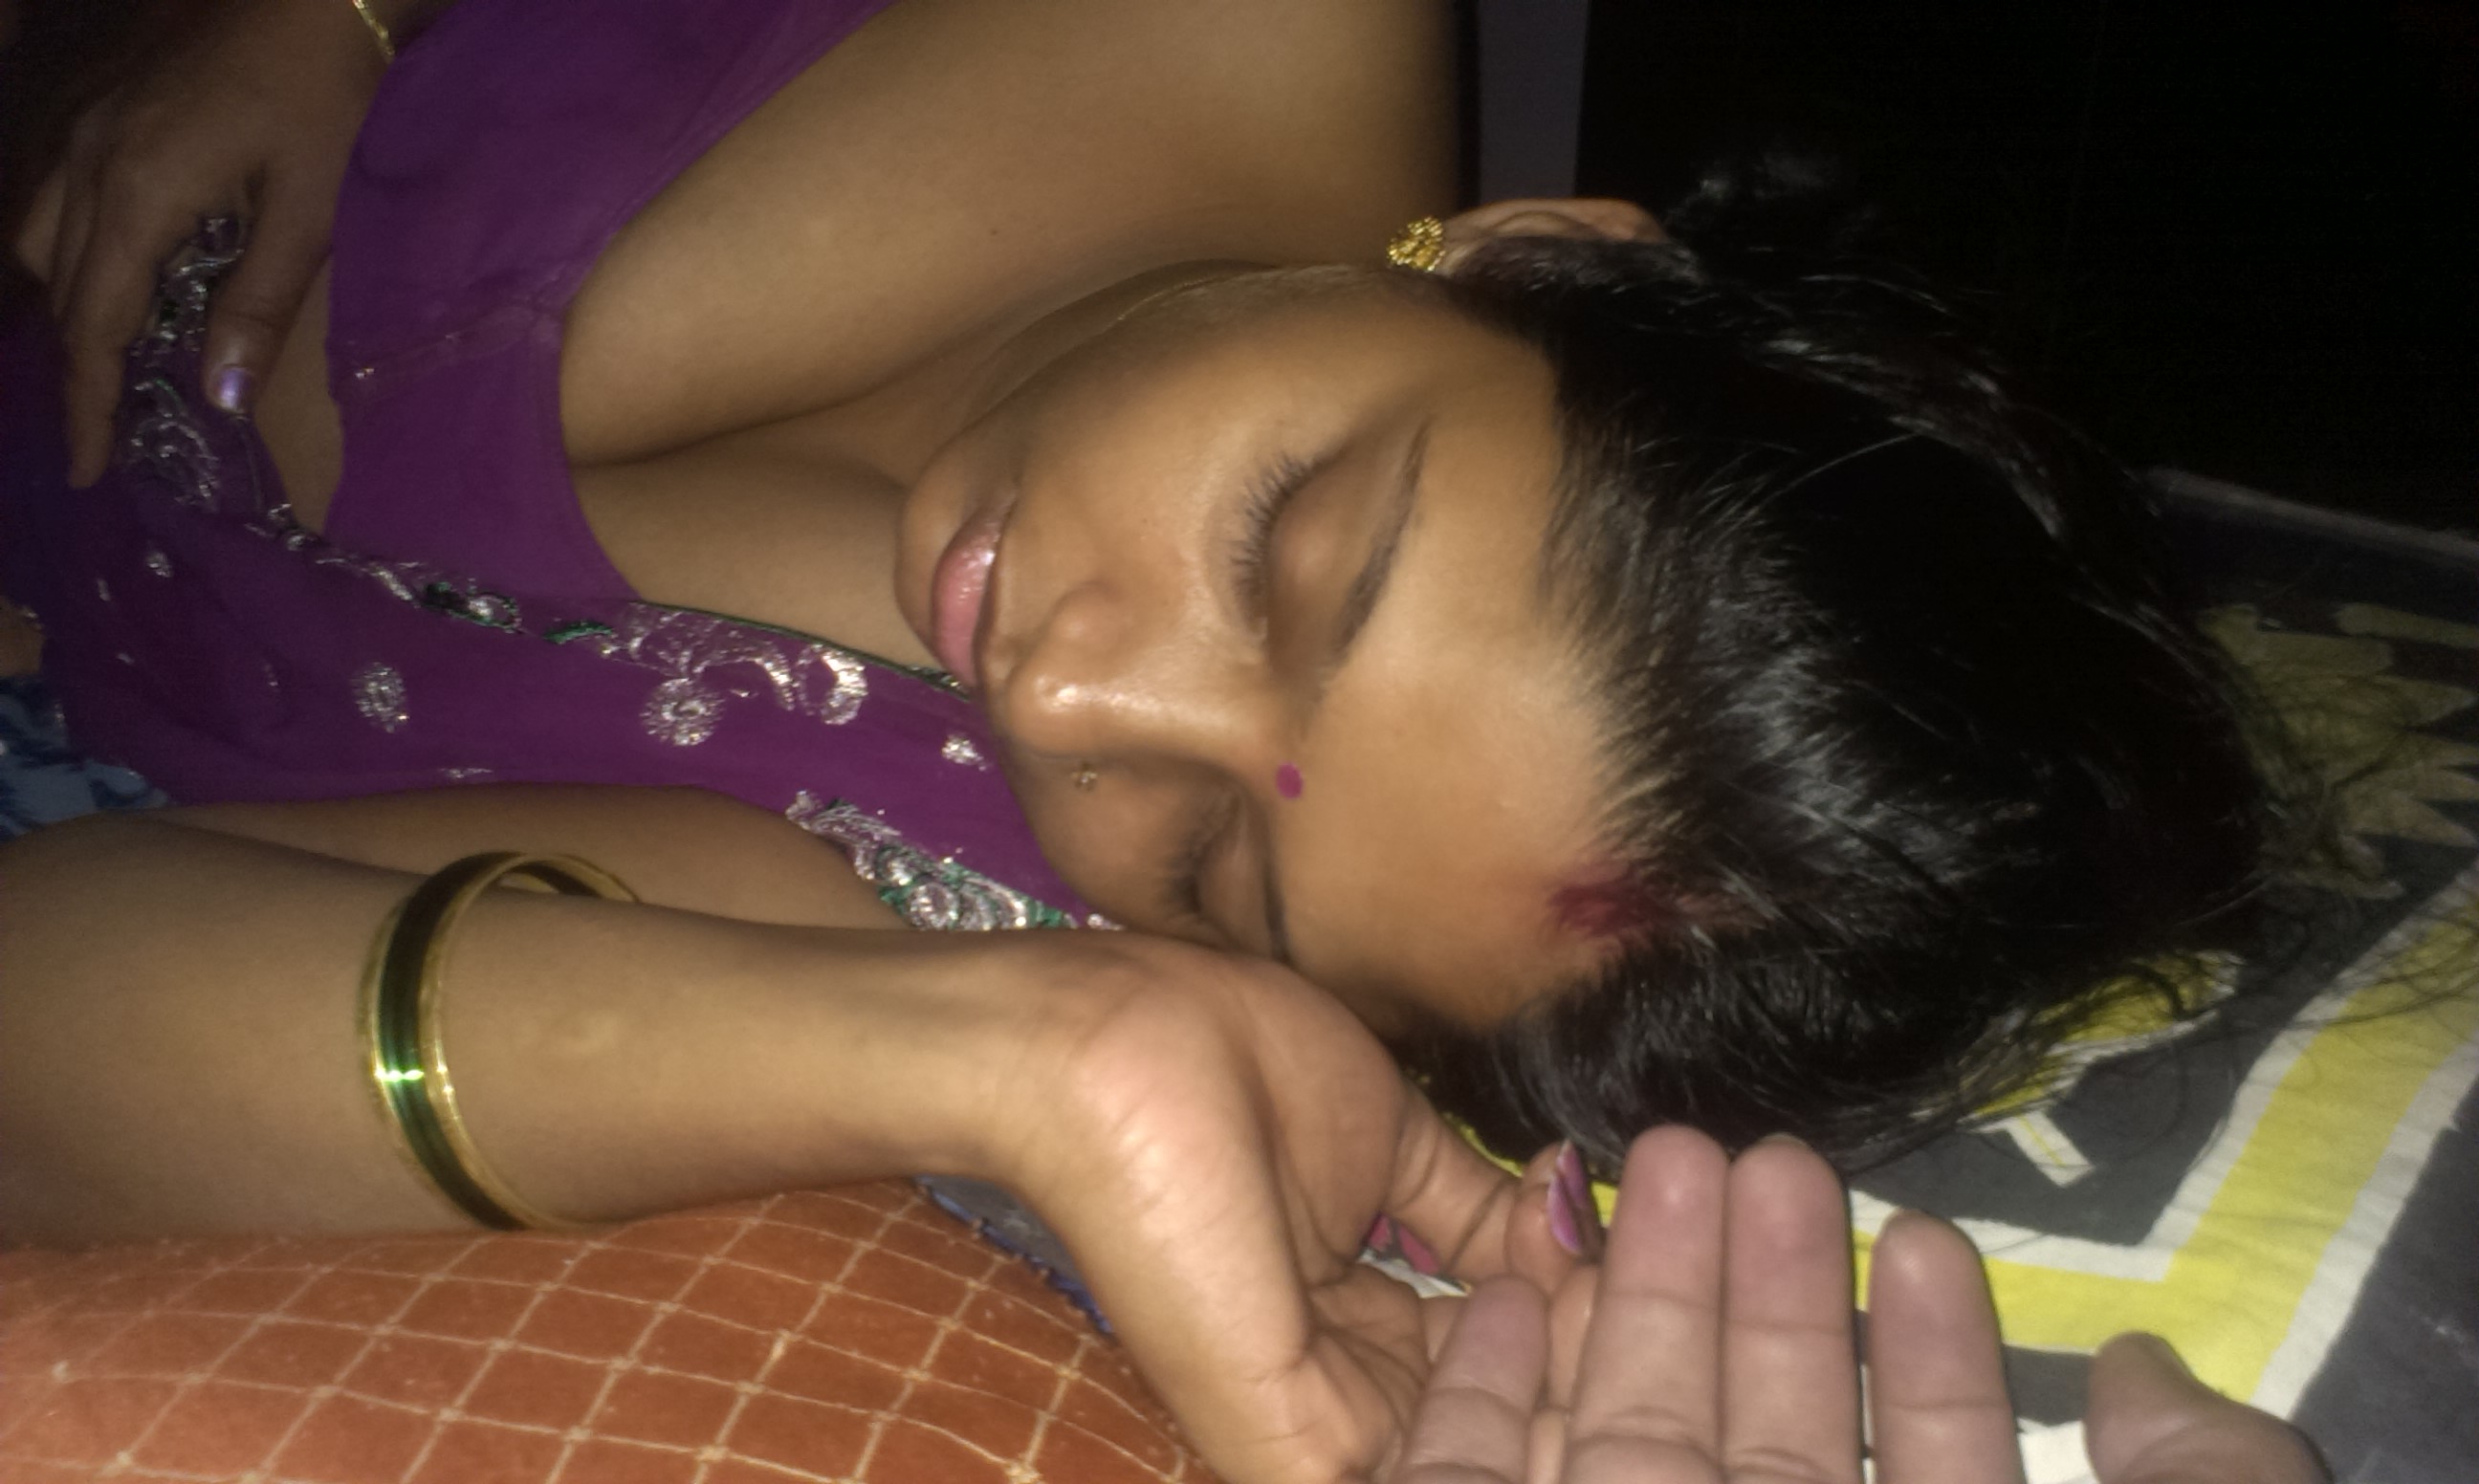 boobs aunty nude Sleeping indian